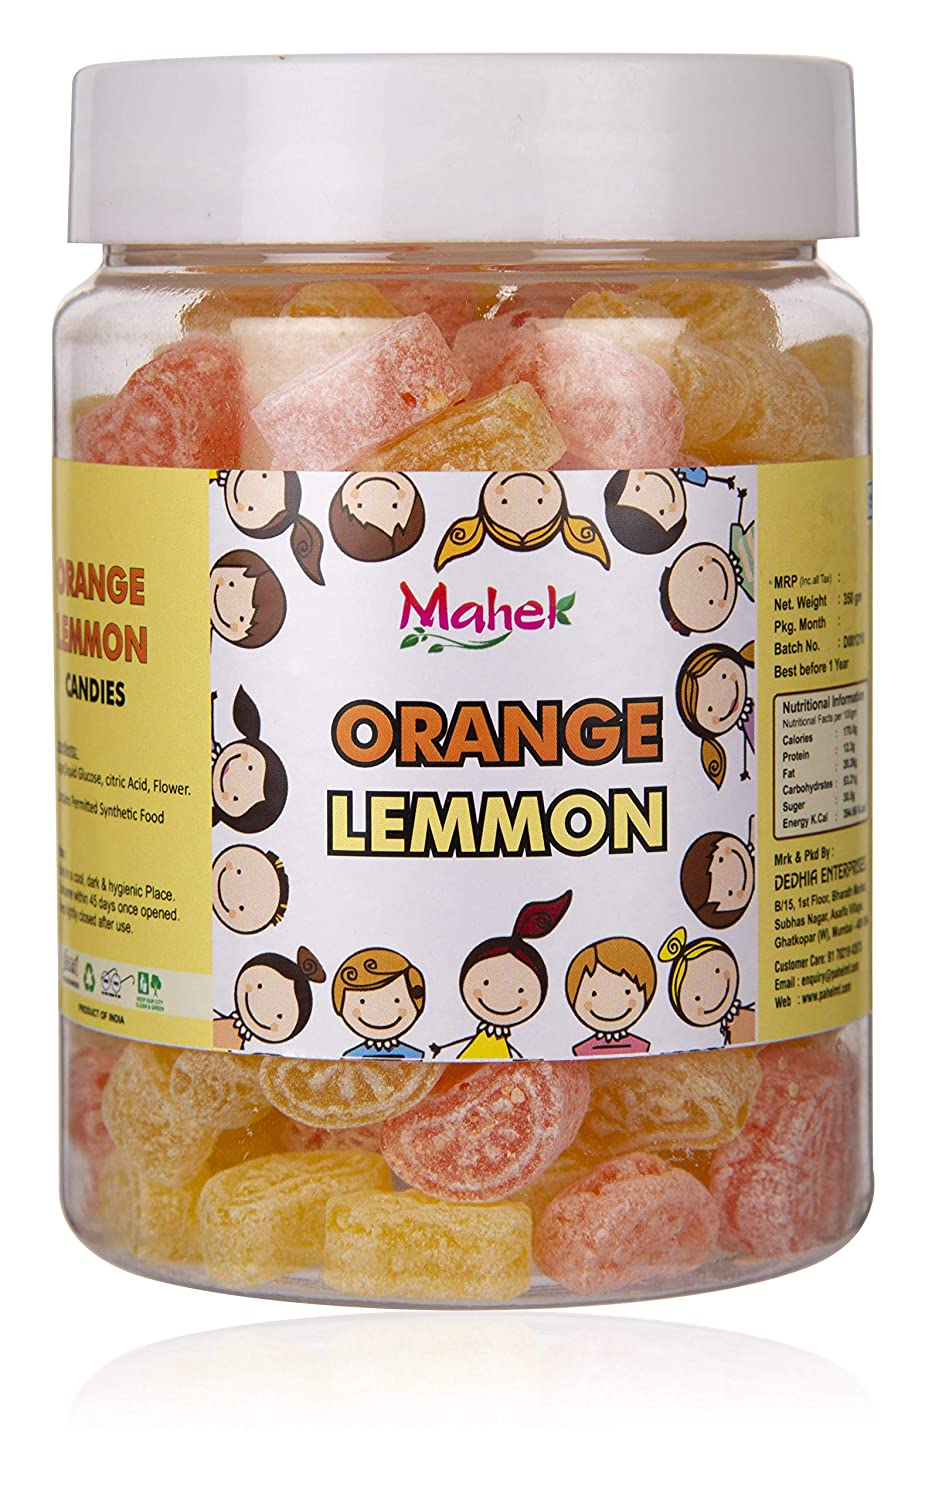 Mahek Orange Lemon Candy Image